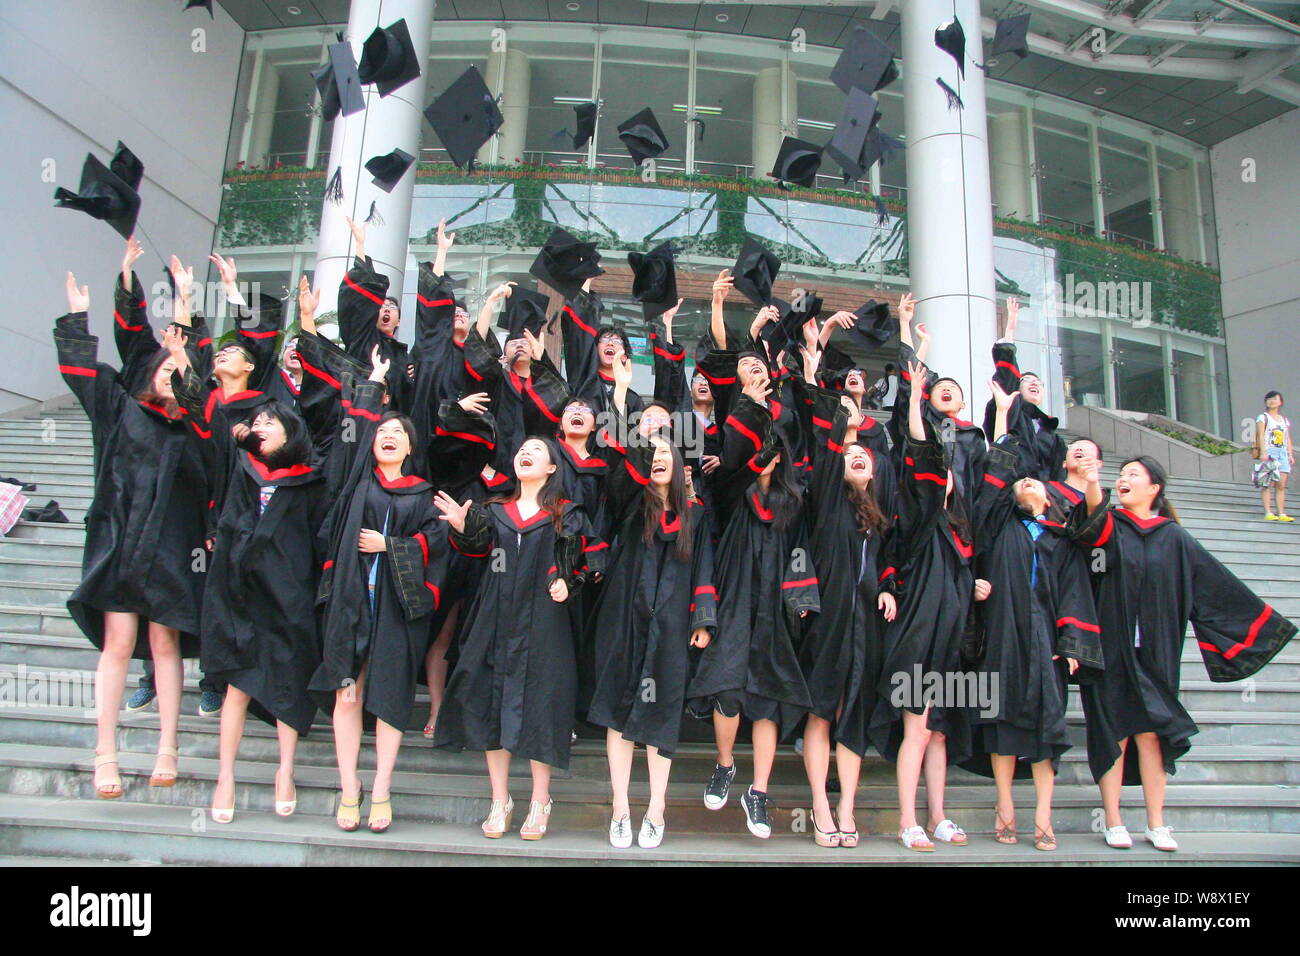 Archivo-chino vestidas en trajes de bachillerato lanzan sombreros al aire durante una ceremonia de graduación en la Universidad de Zhejiang A&F Hang Fotografía de stock -